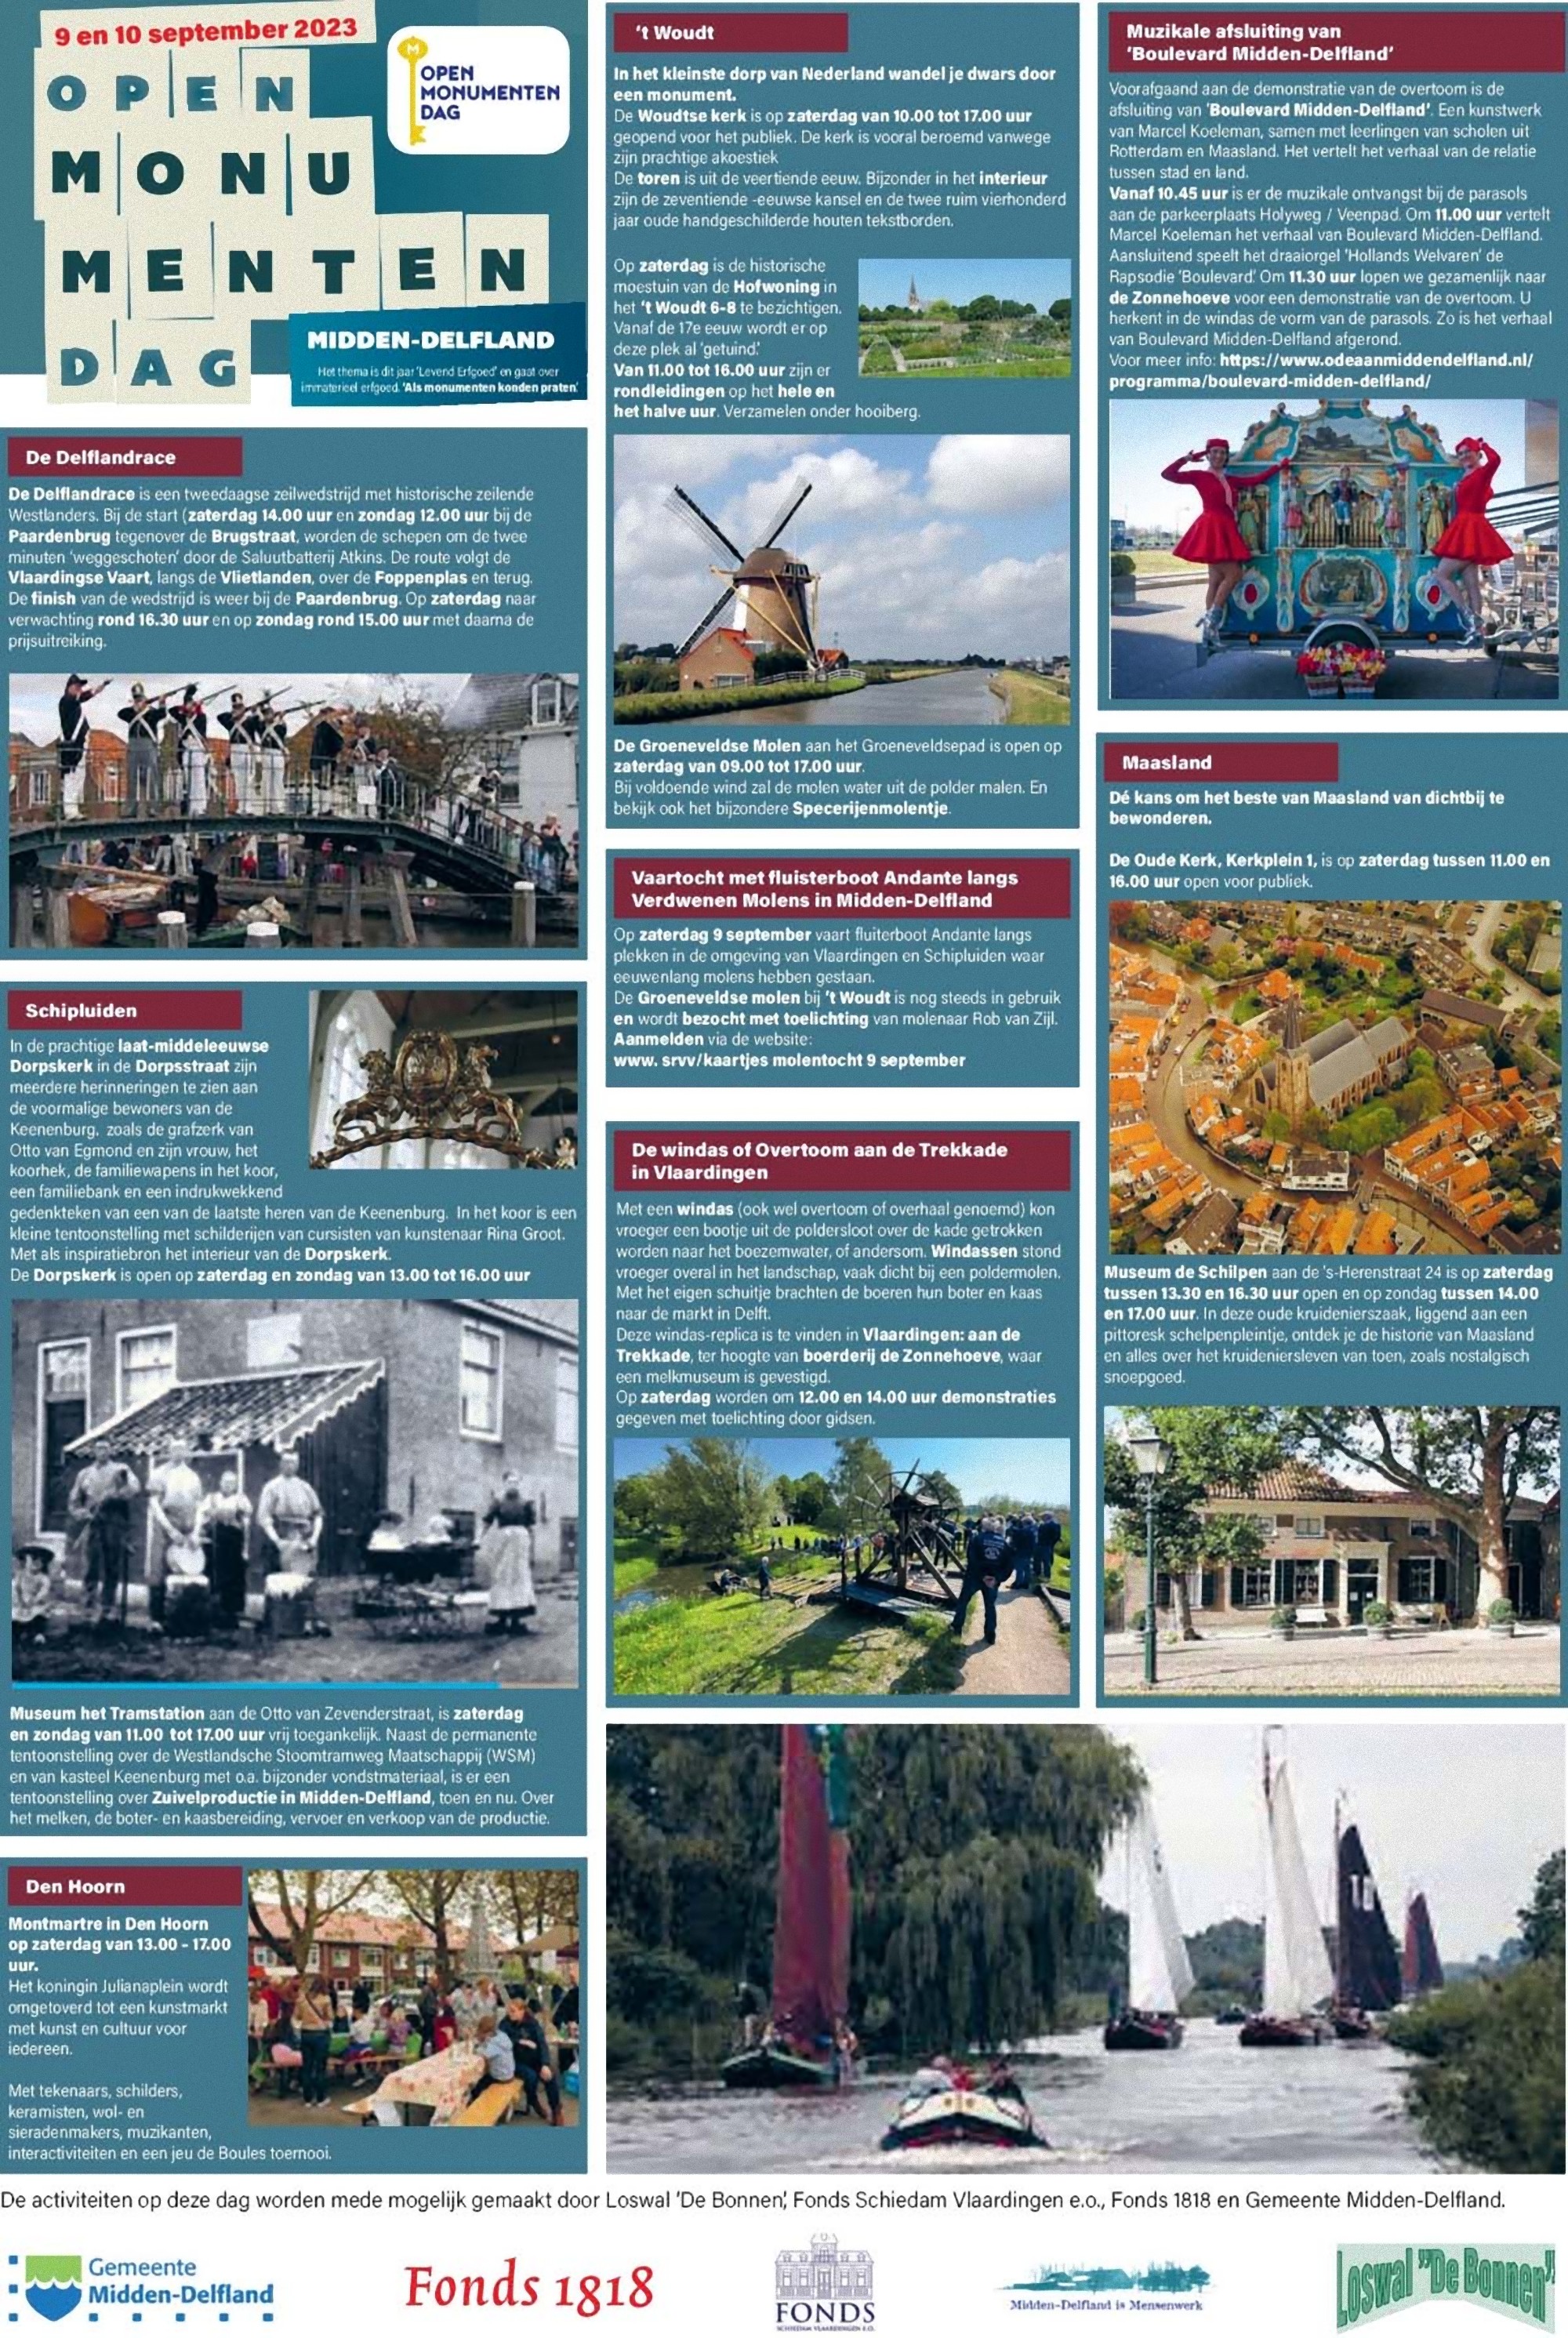 Open Monumentendagen in Midden-Delfland - 9 & 10 september 2023